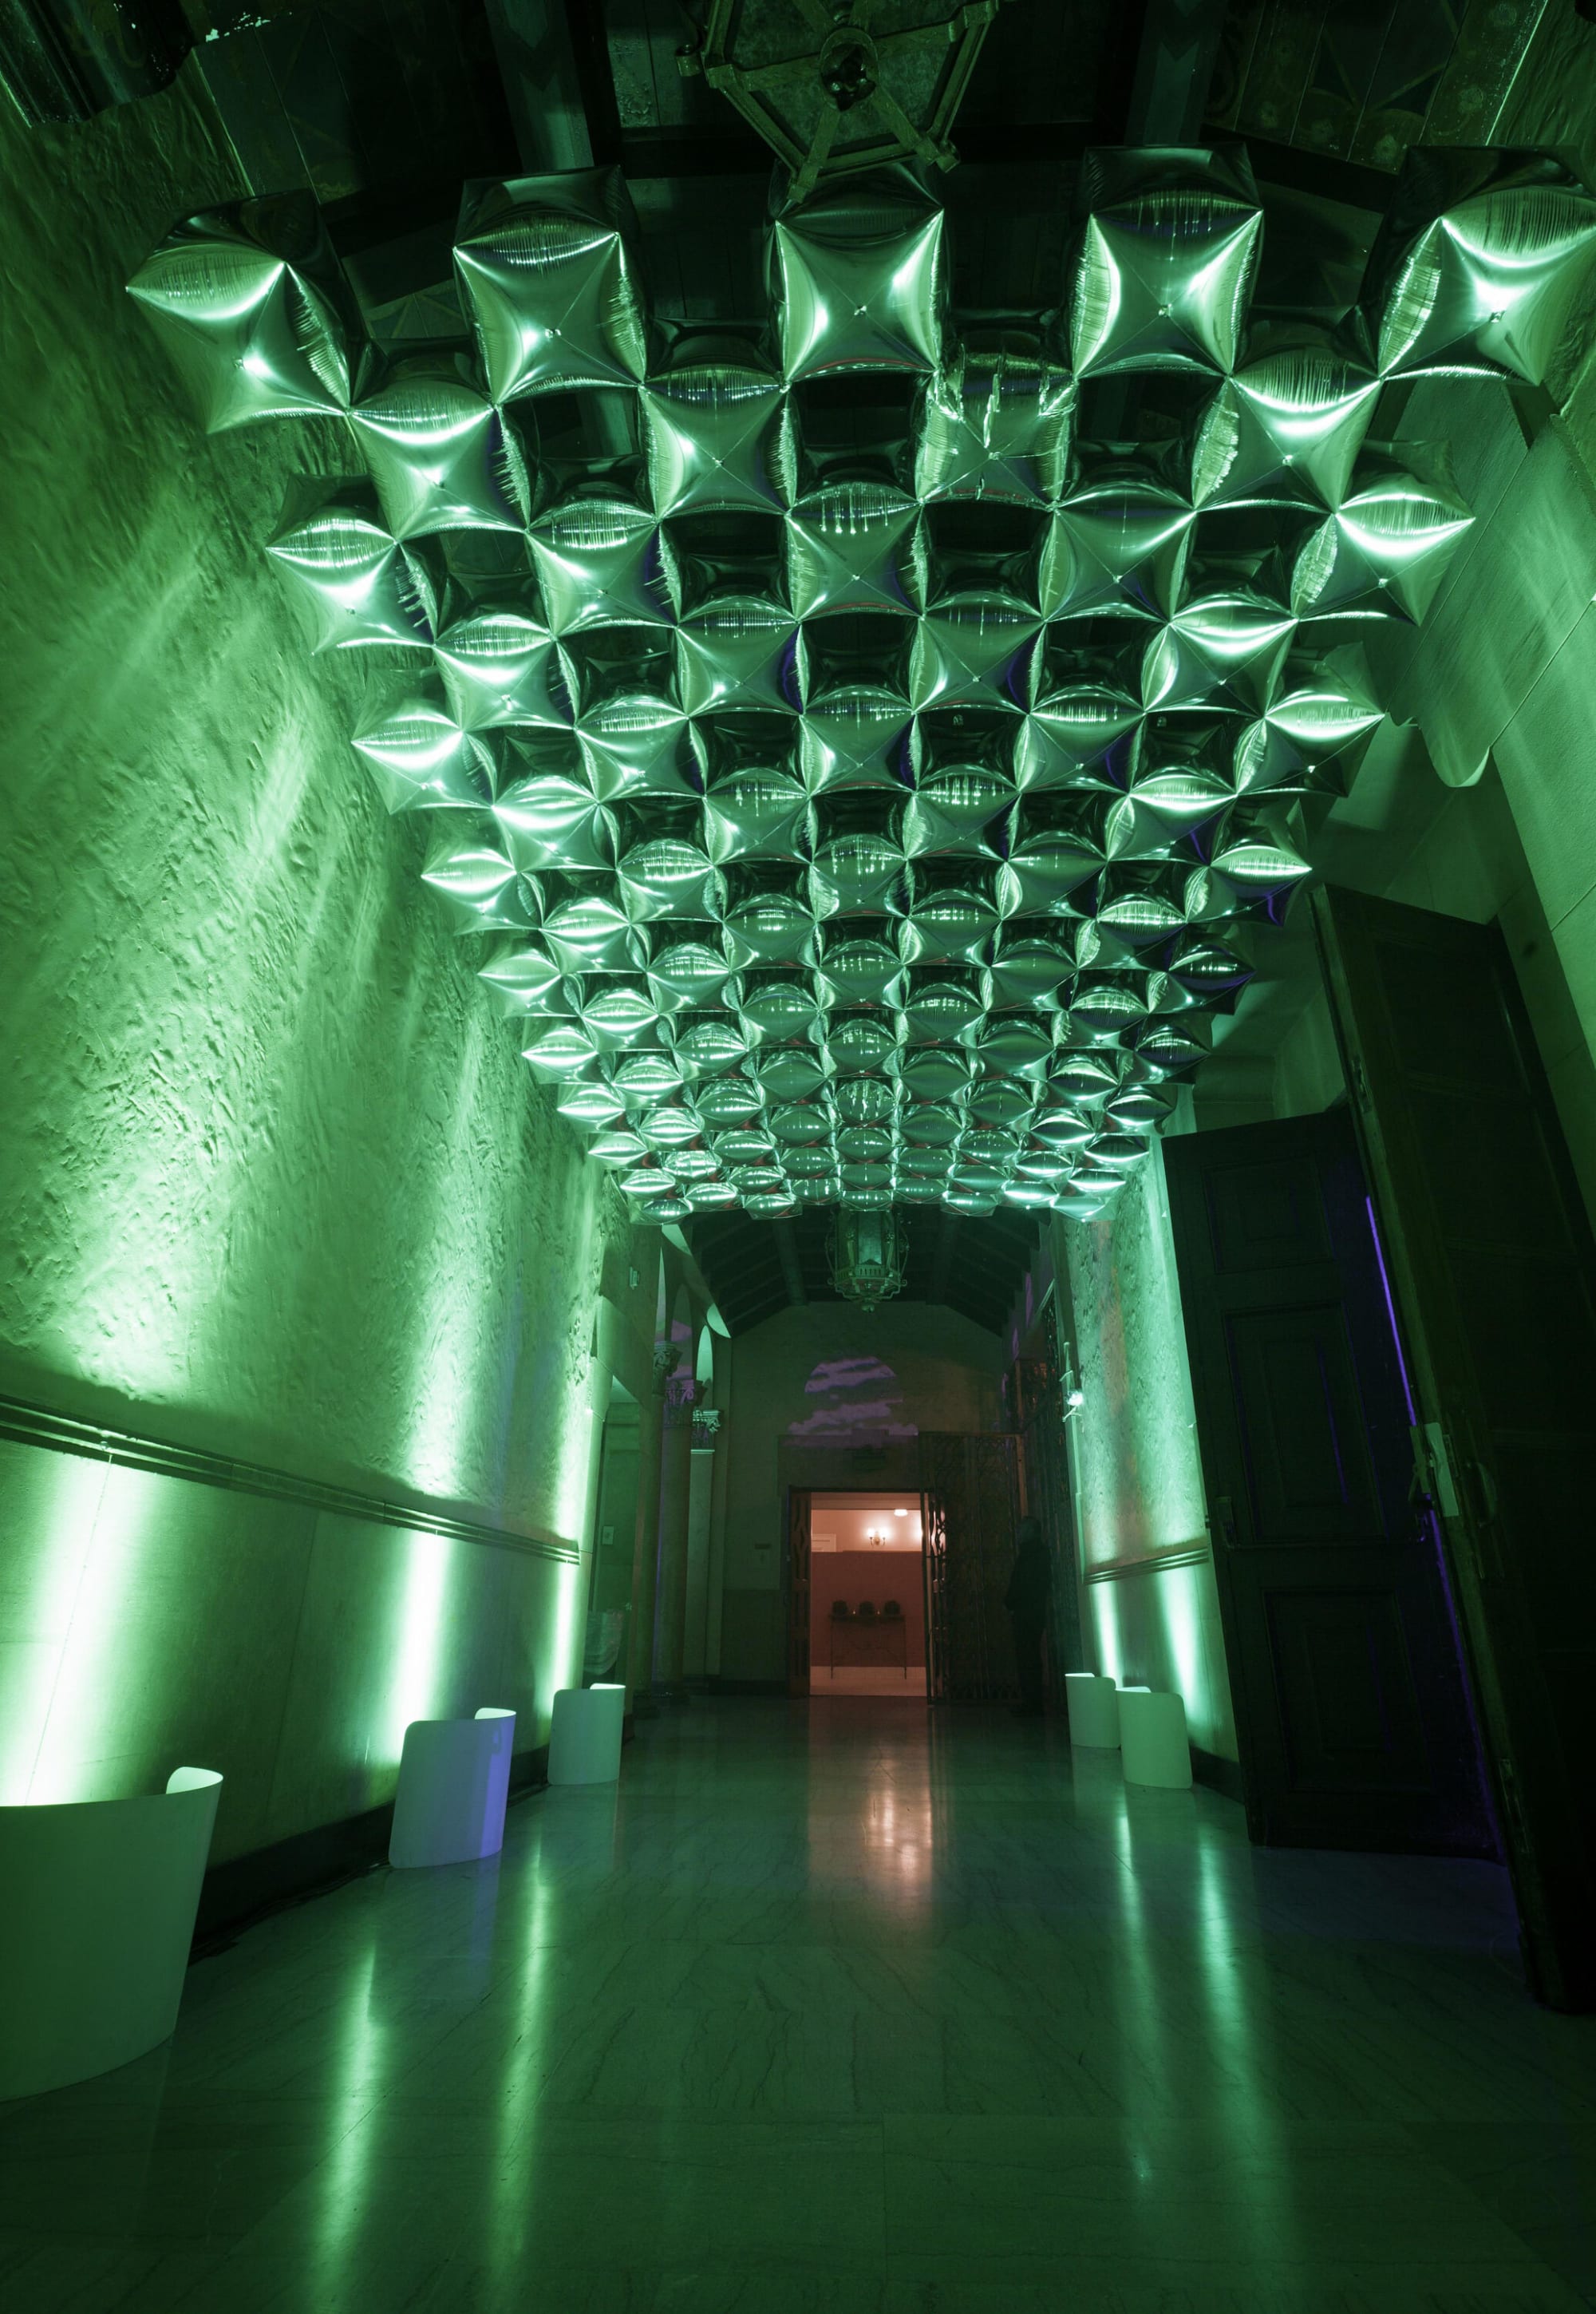 A green hallway